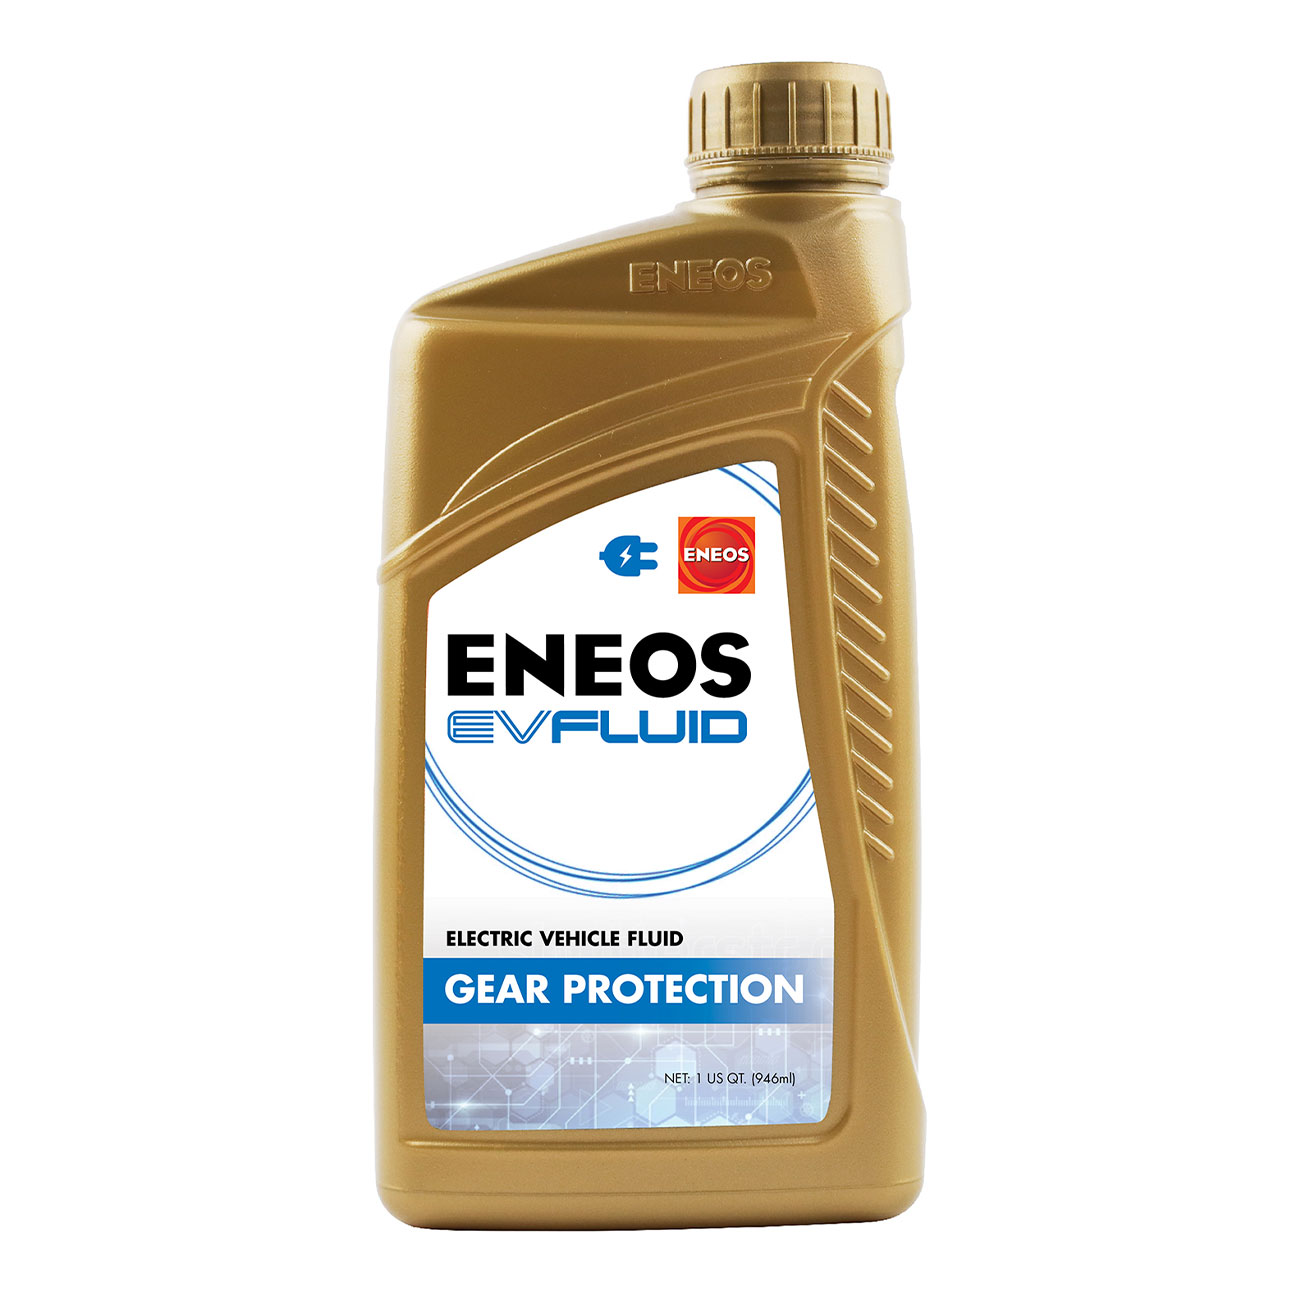 ENEOS EV Fluid Gear Protection